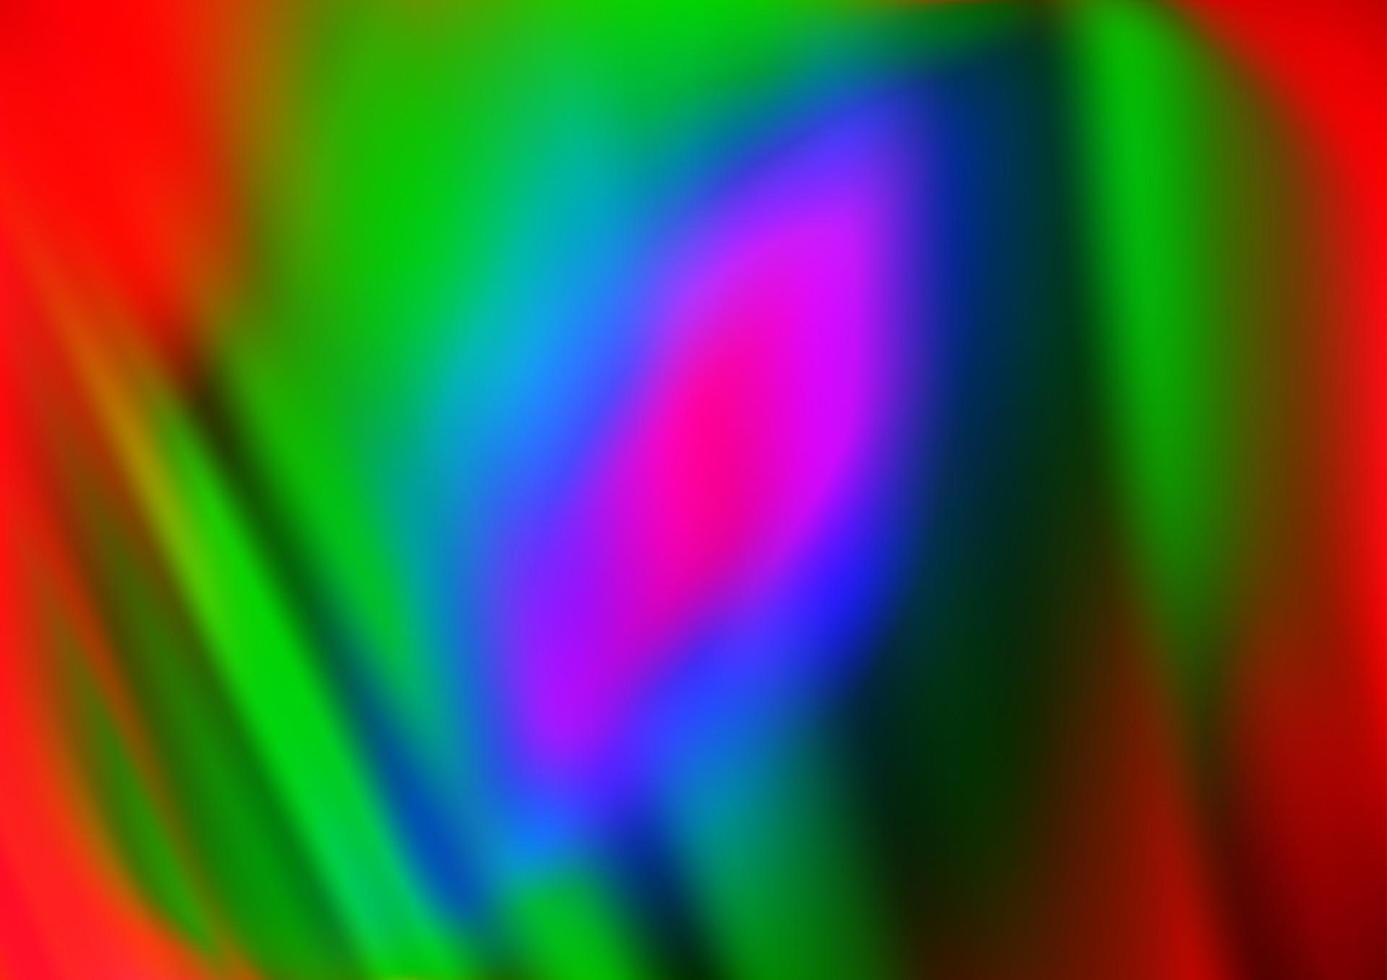 multicolor claro, plantilla de vector de arco iris con líneas dobladas.